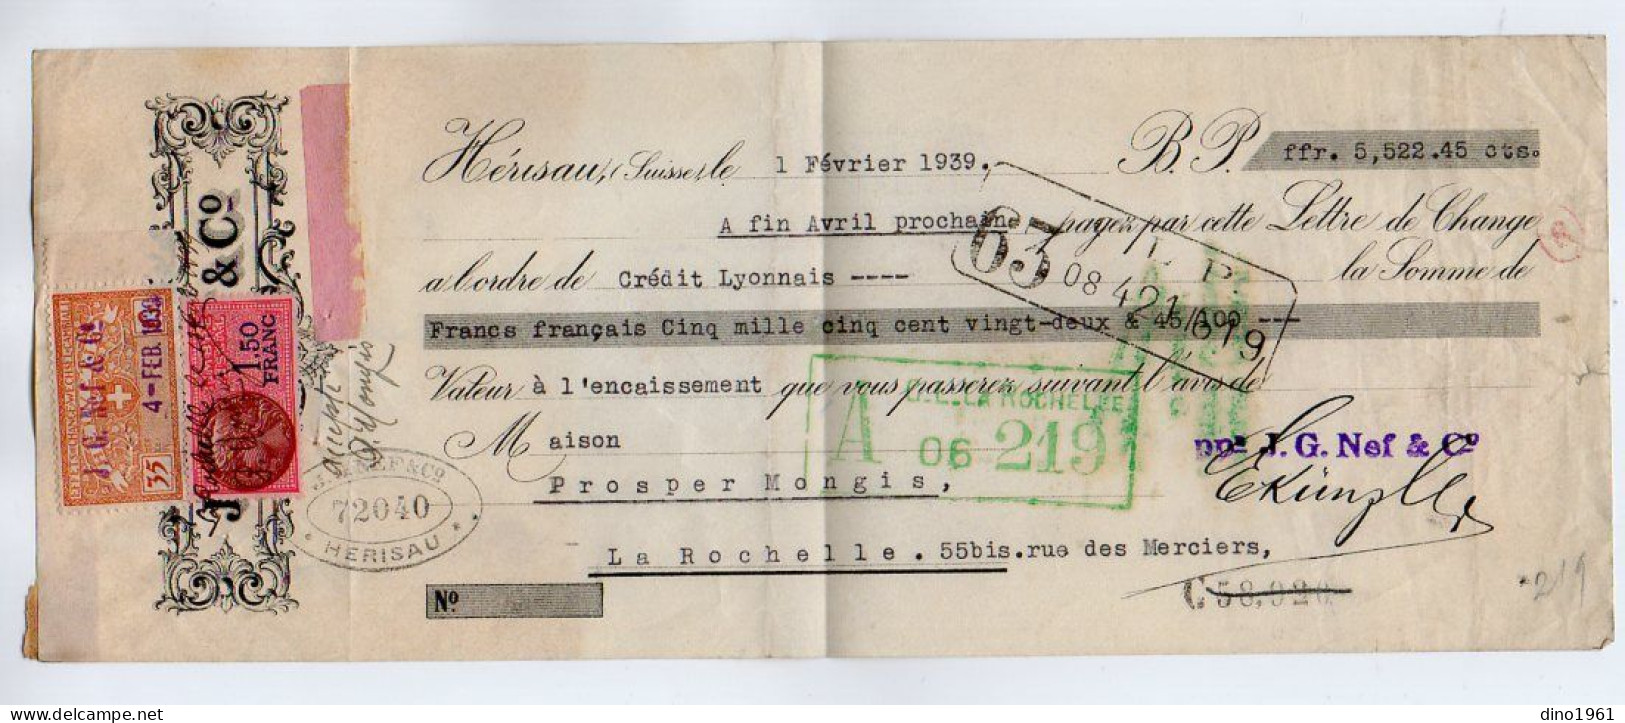 VP22.579 - Lettre De Change - HERISAU,Suisse 1939 - J. G. NEF & Co - Fiscal,Effets De Change - WECHSEL - CAMBIALI . 5Cs - Letras De Cambio